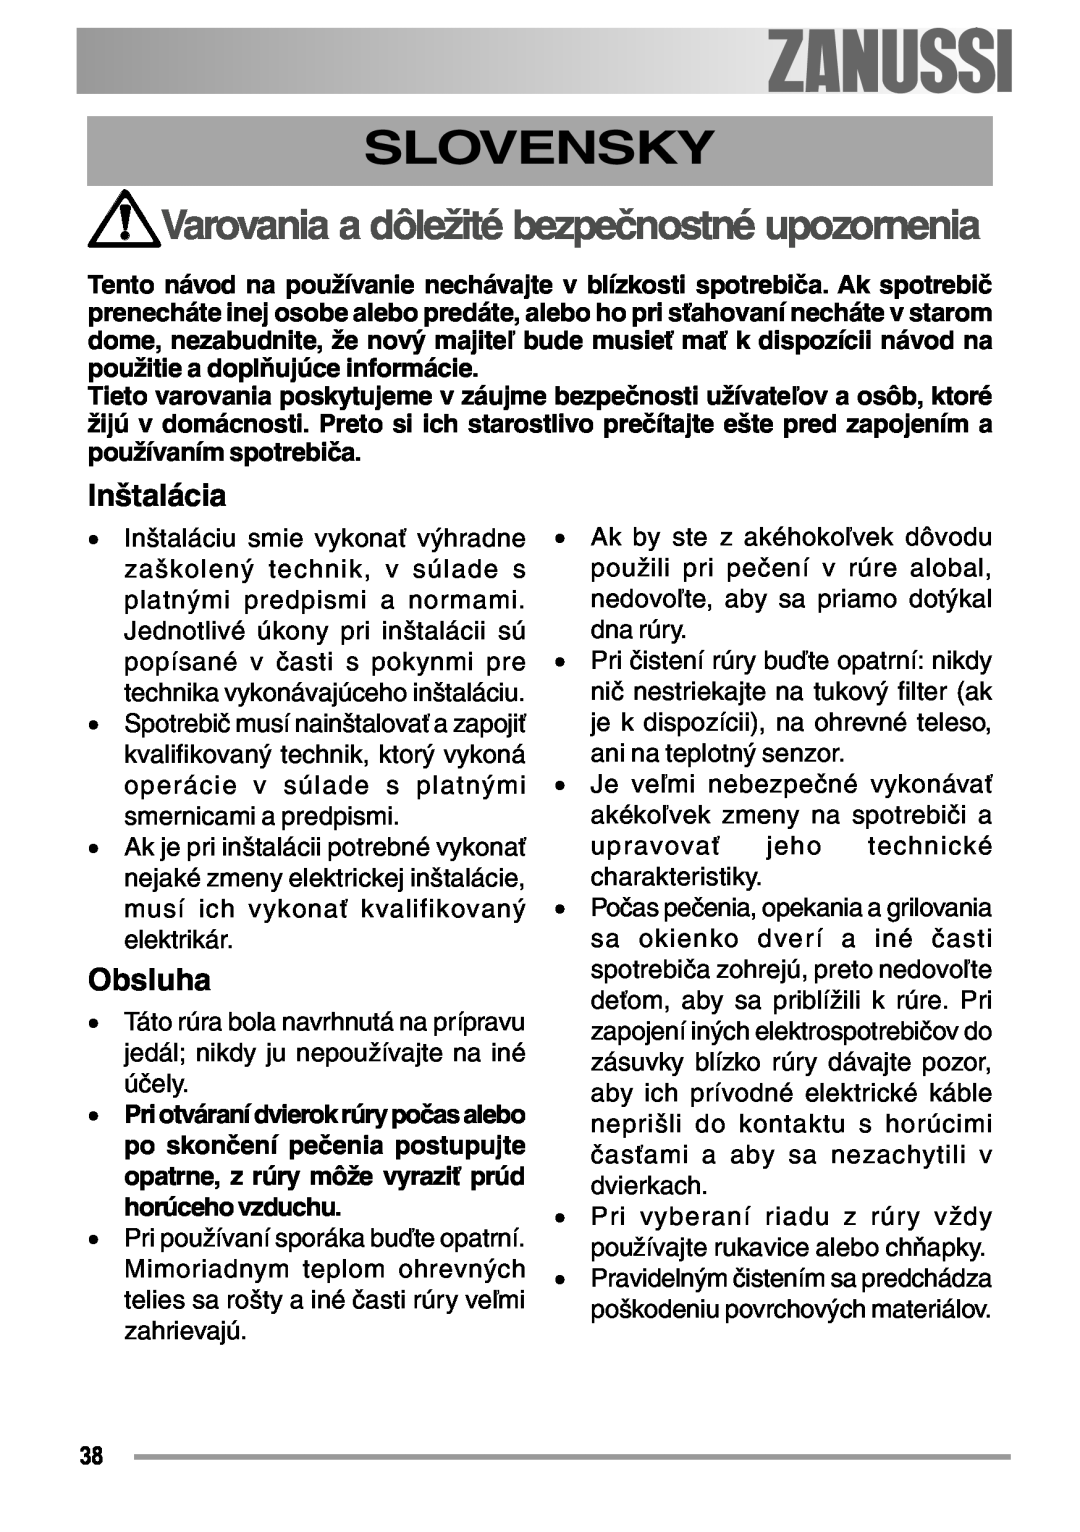 Zanussi ZOB 594 manual Slovensky, Inštalácia, Obsluha, Varovania a dôležité bezpečnostné upozornenia, electrolux 